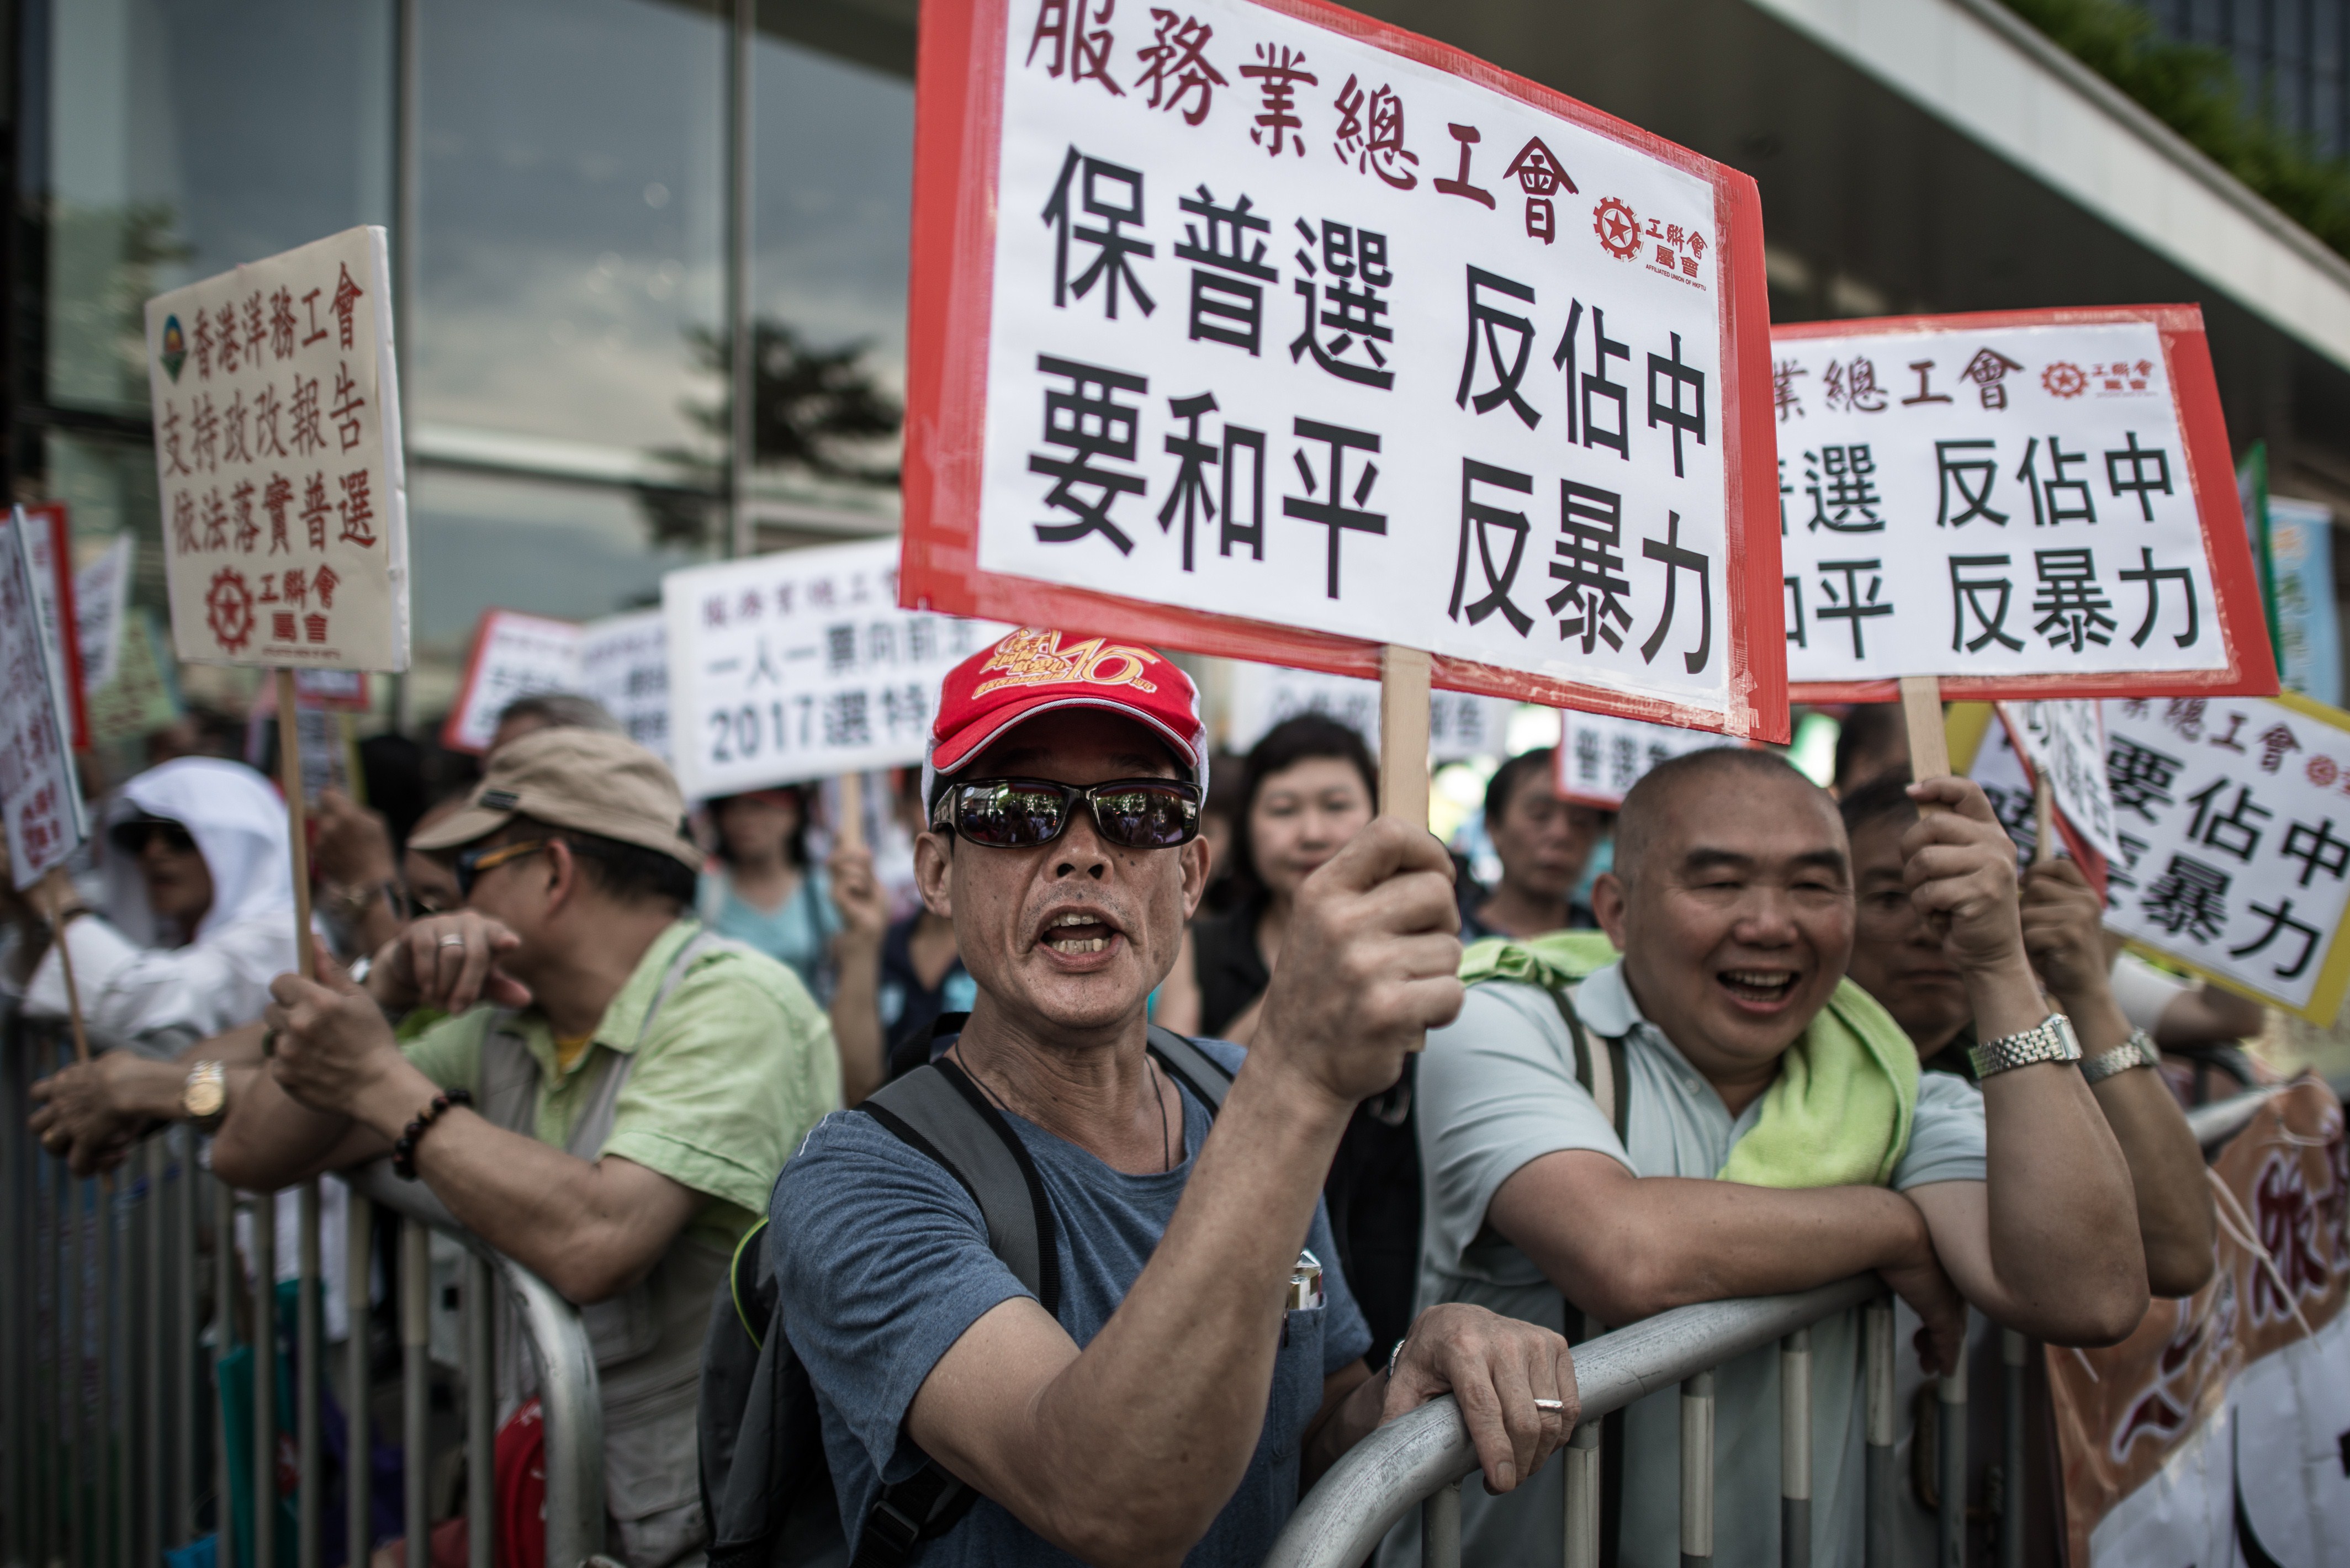 HONG KONG-CHINA-DEMOCRACY